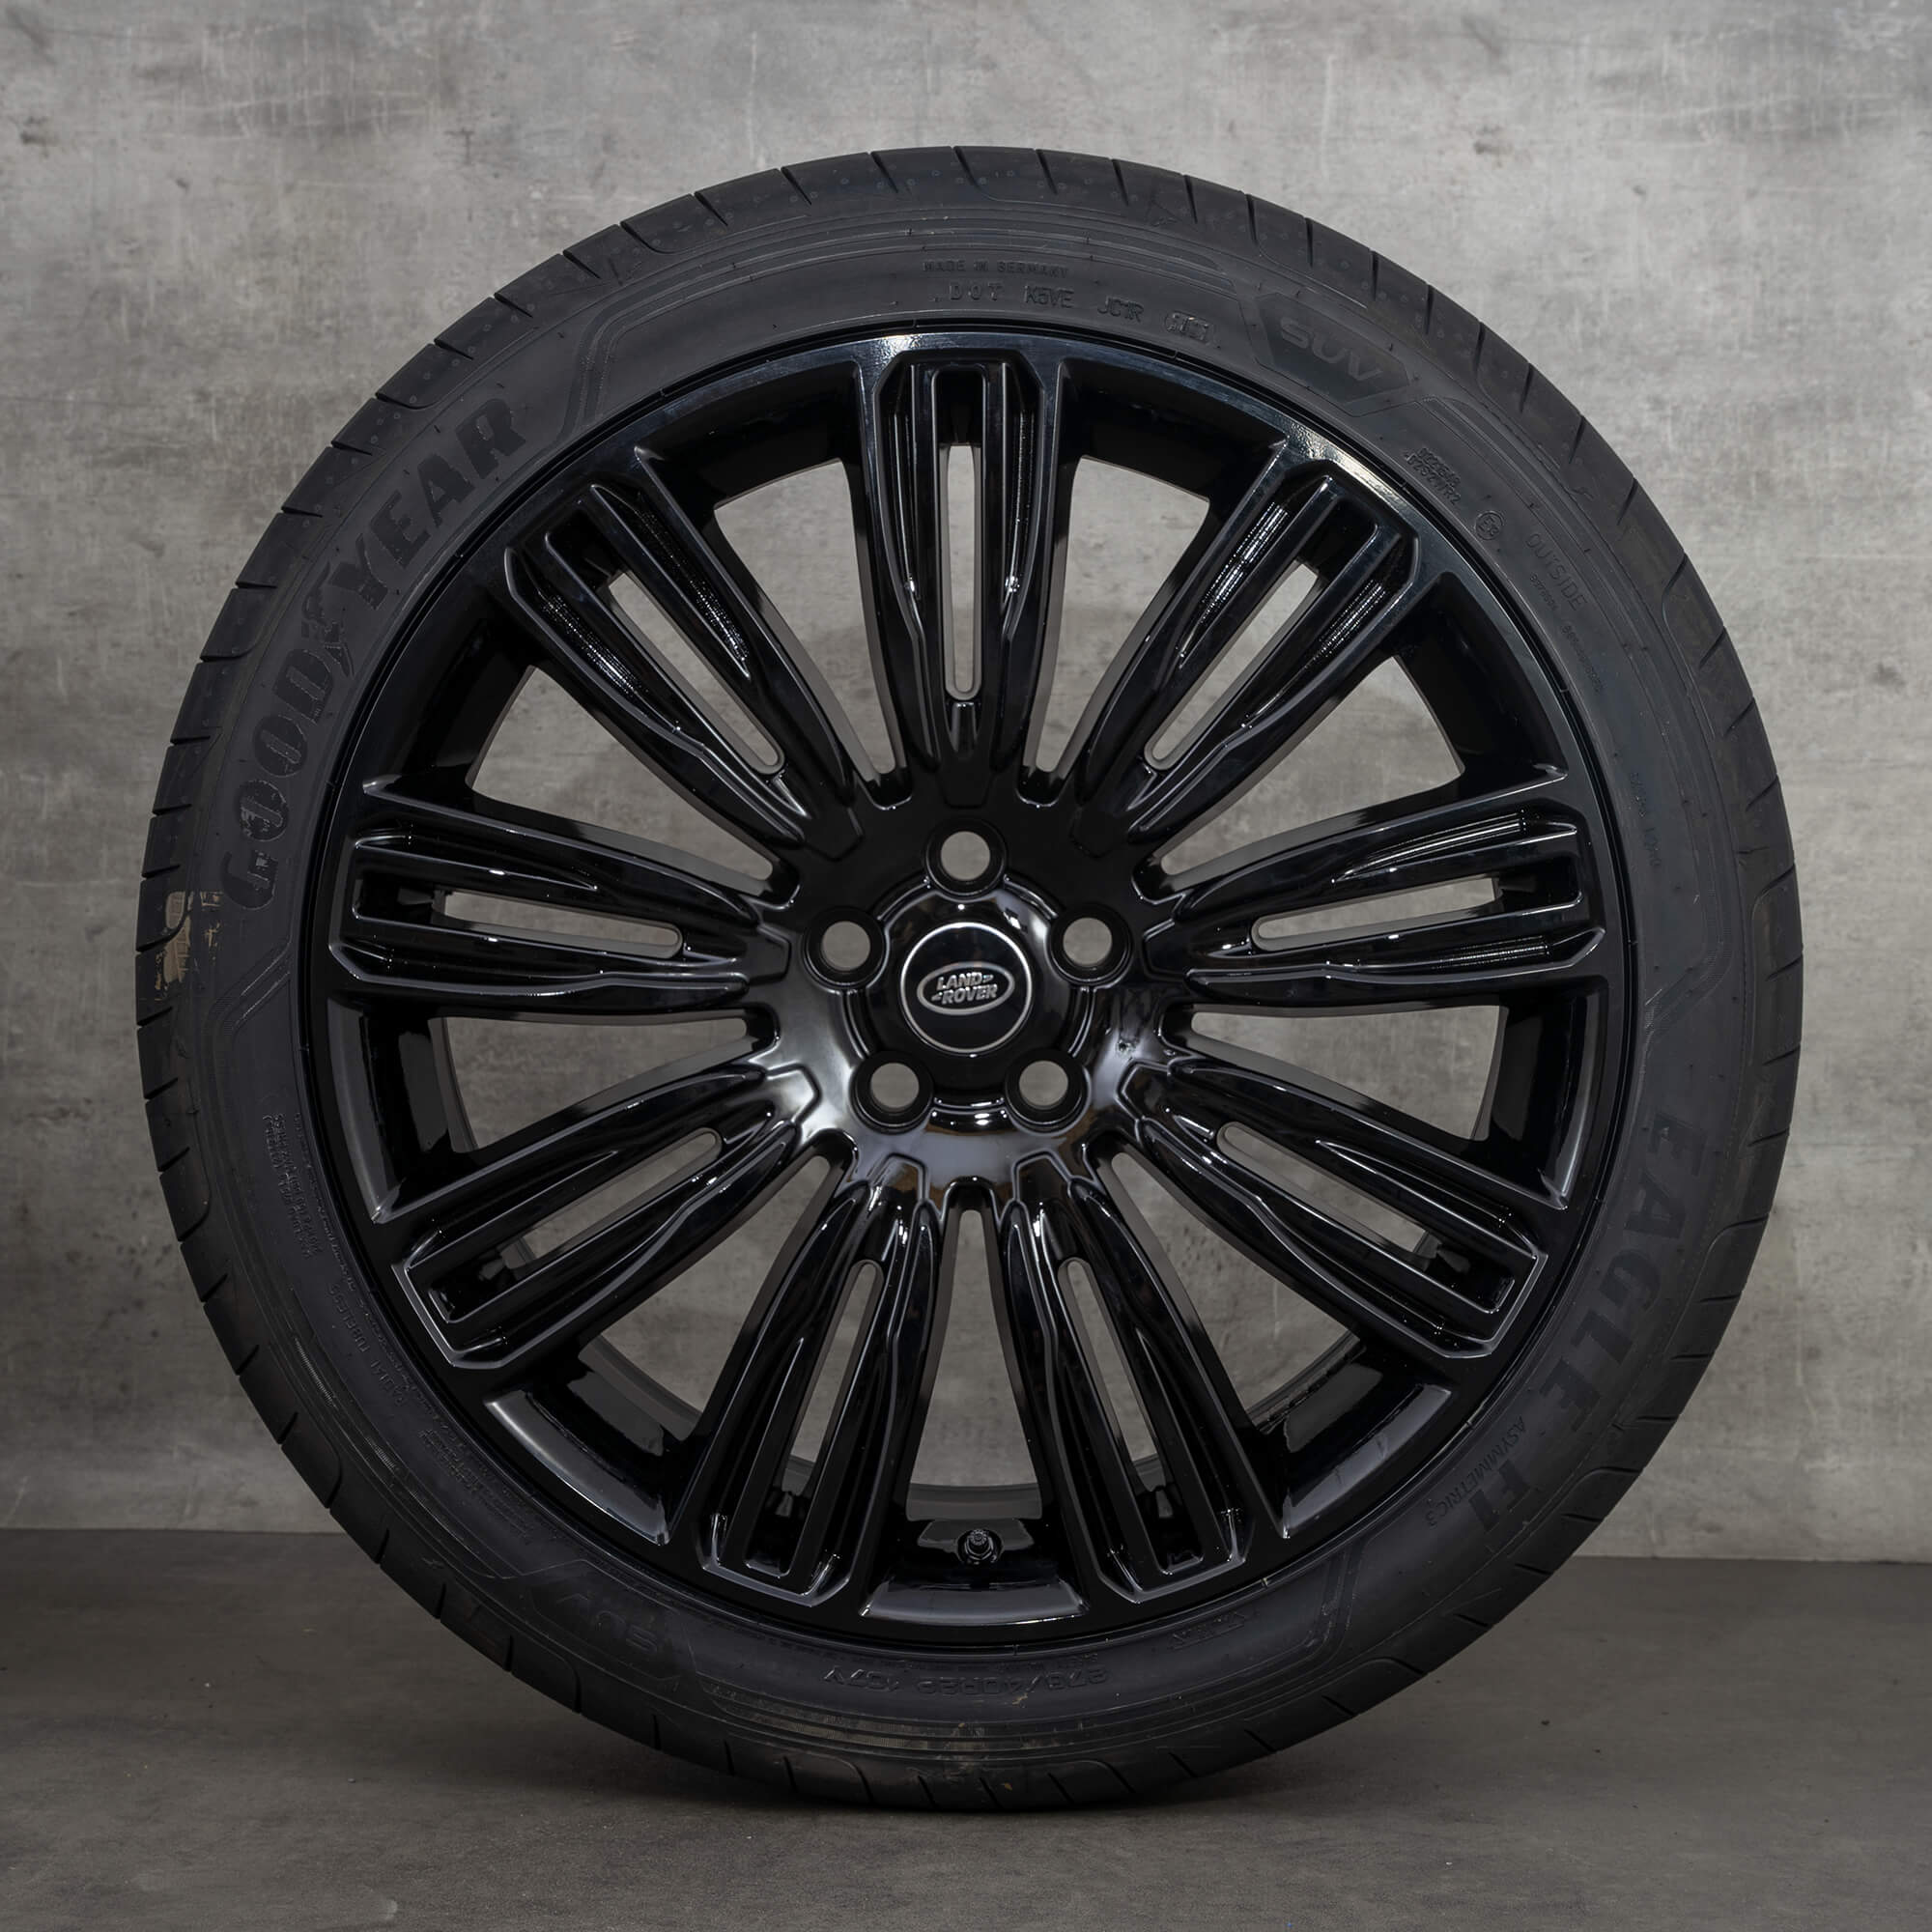 Land Range Rover 22 polegadas jantes 9012 de alumínio pneus verão rodas NOVO